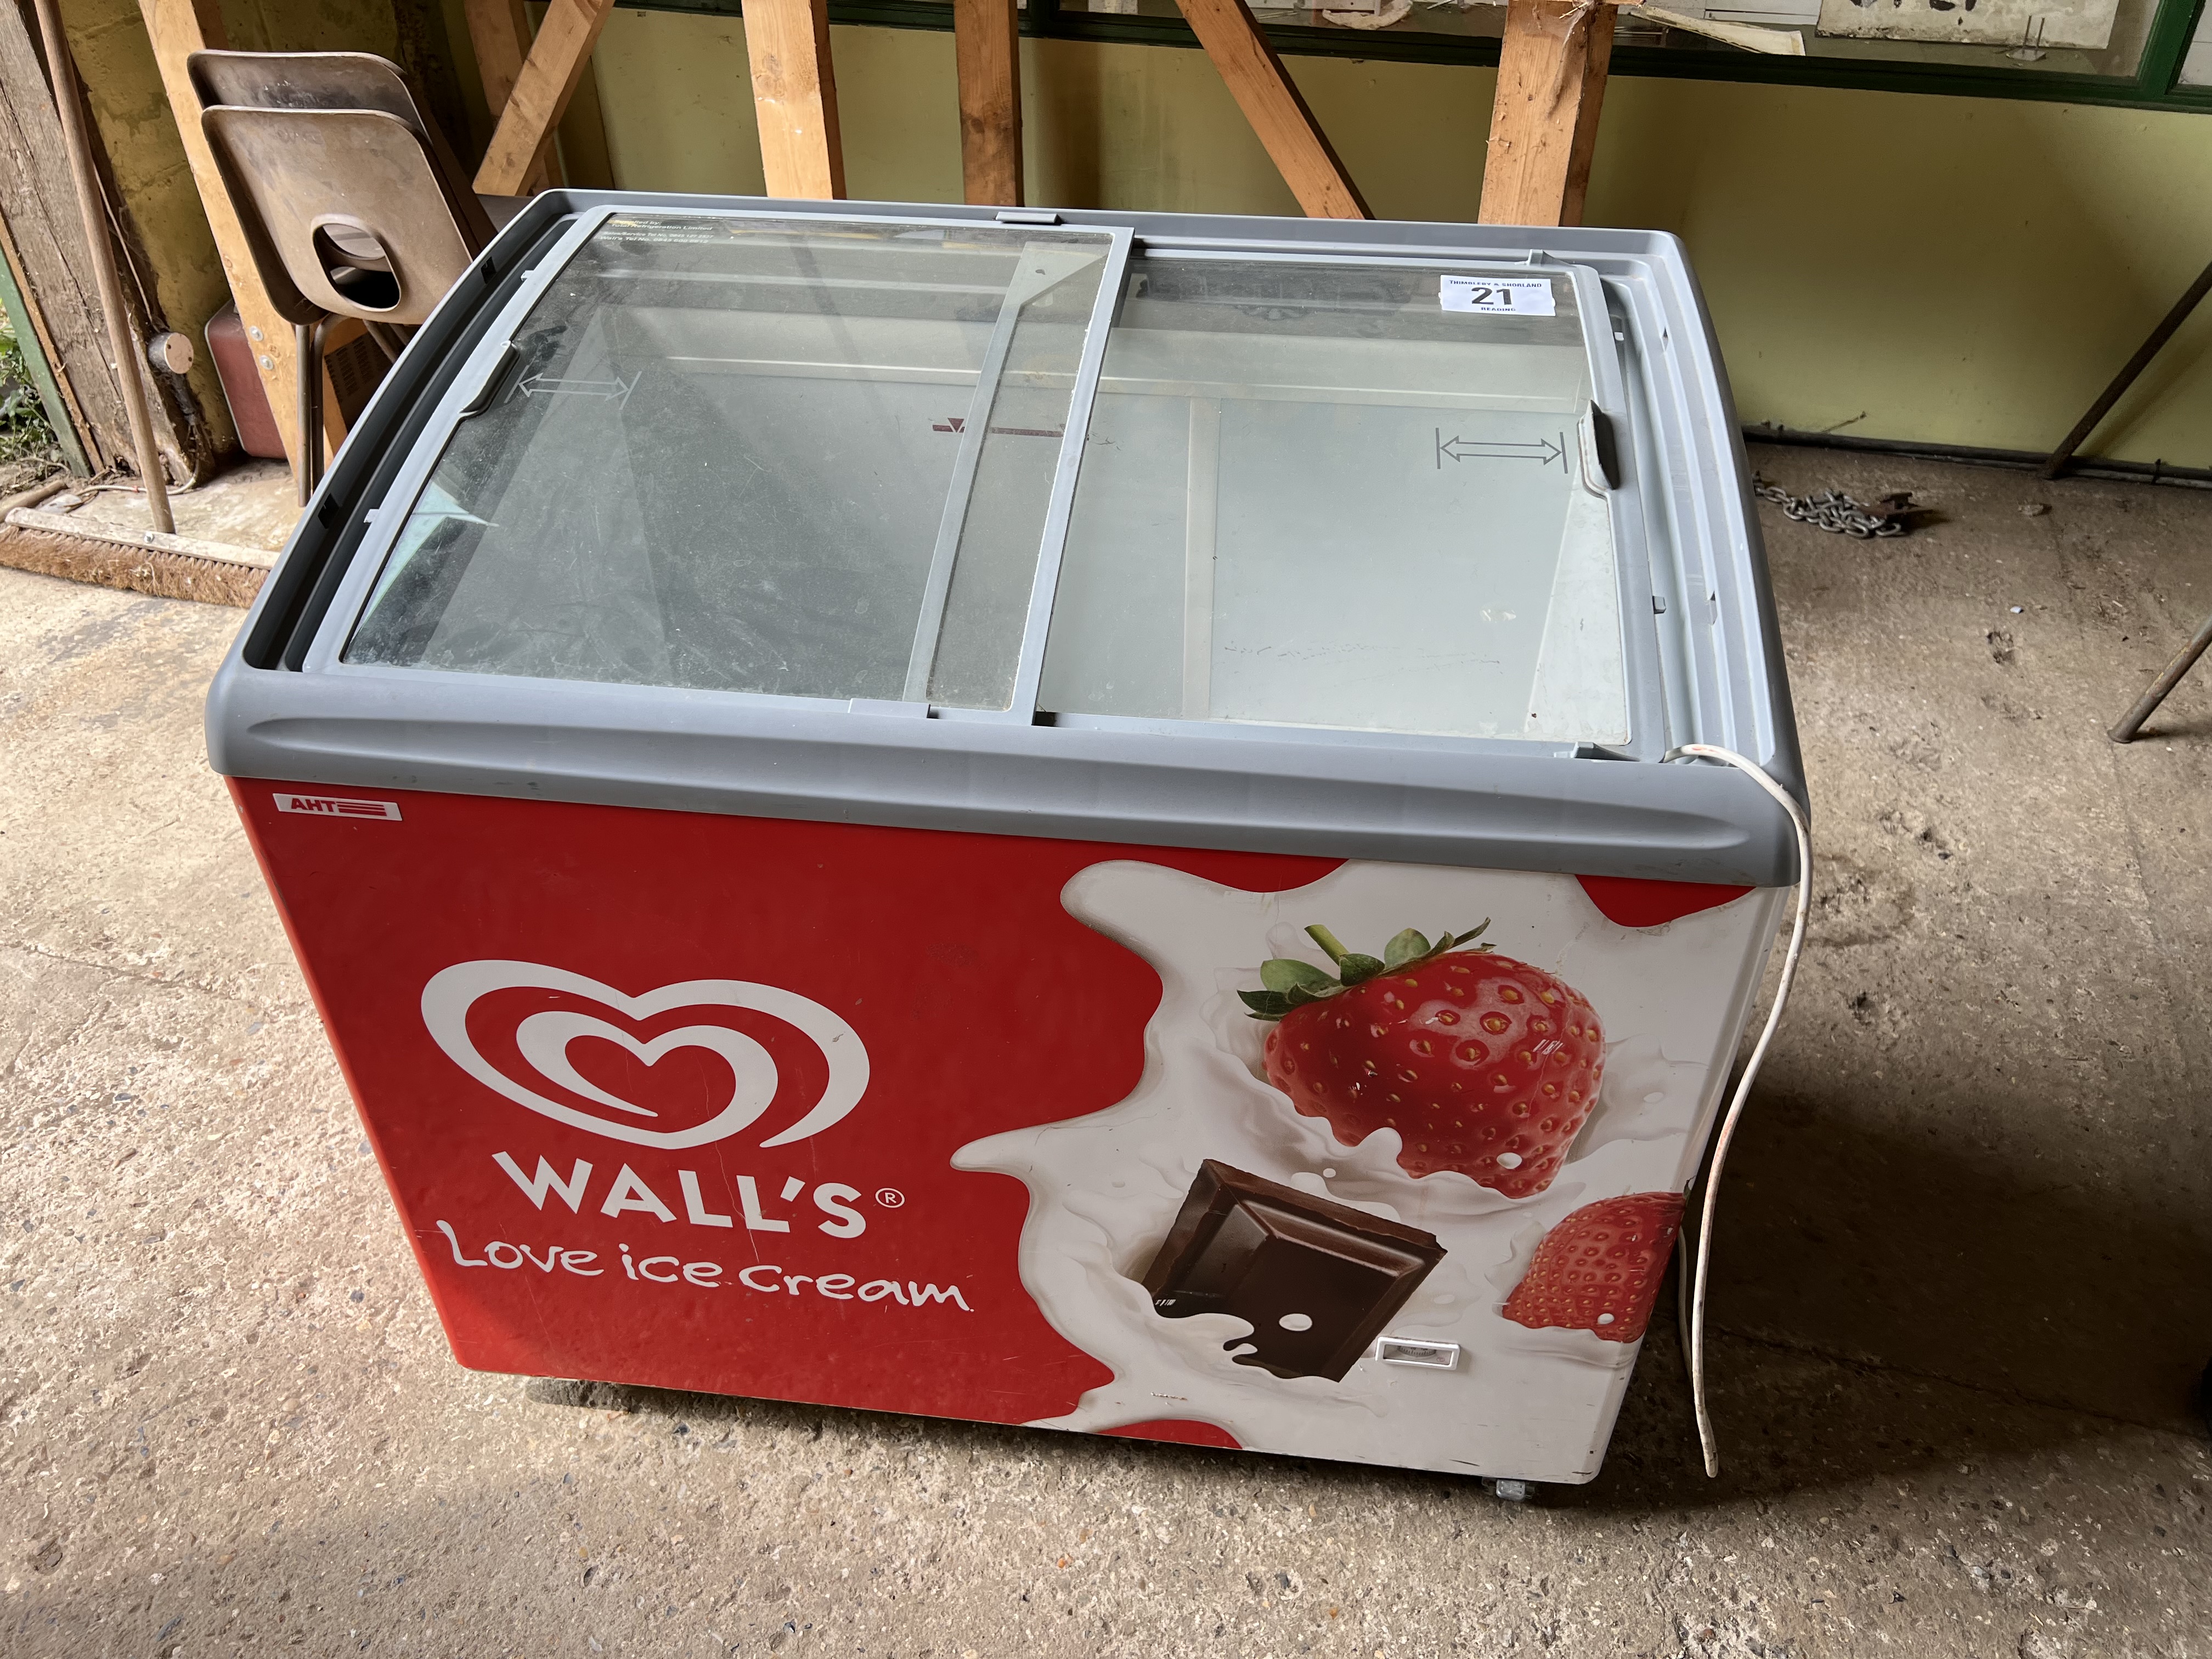 Walls Ice Cream freezer